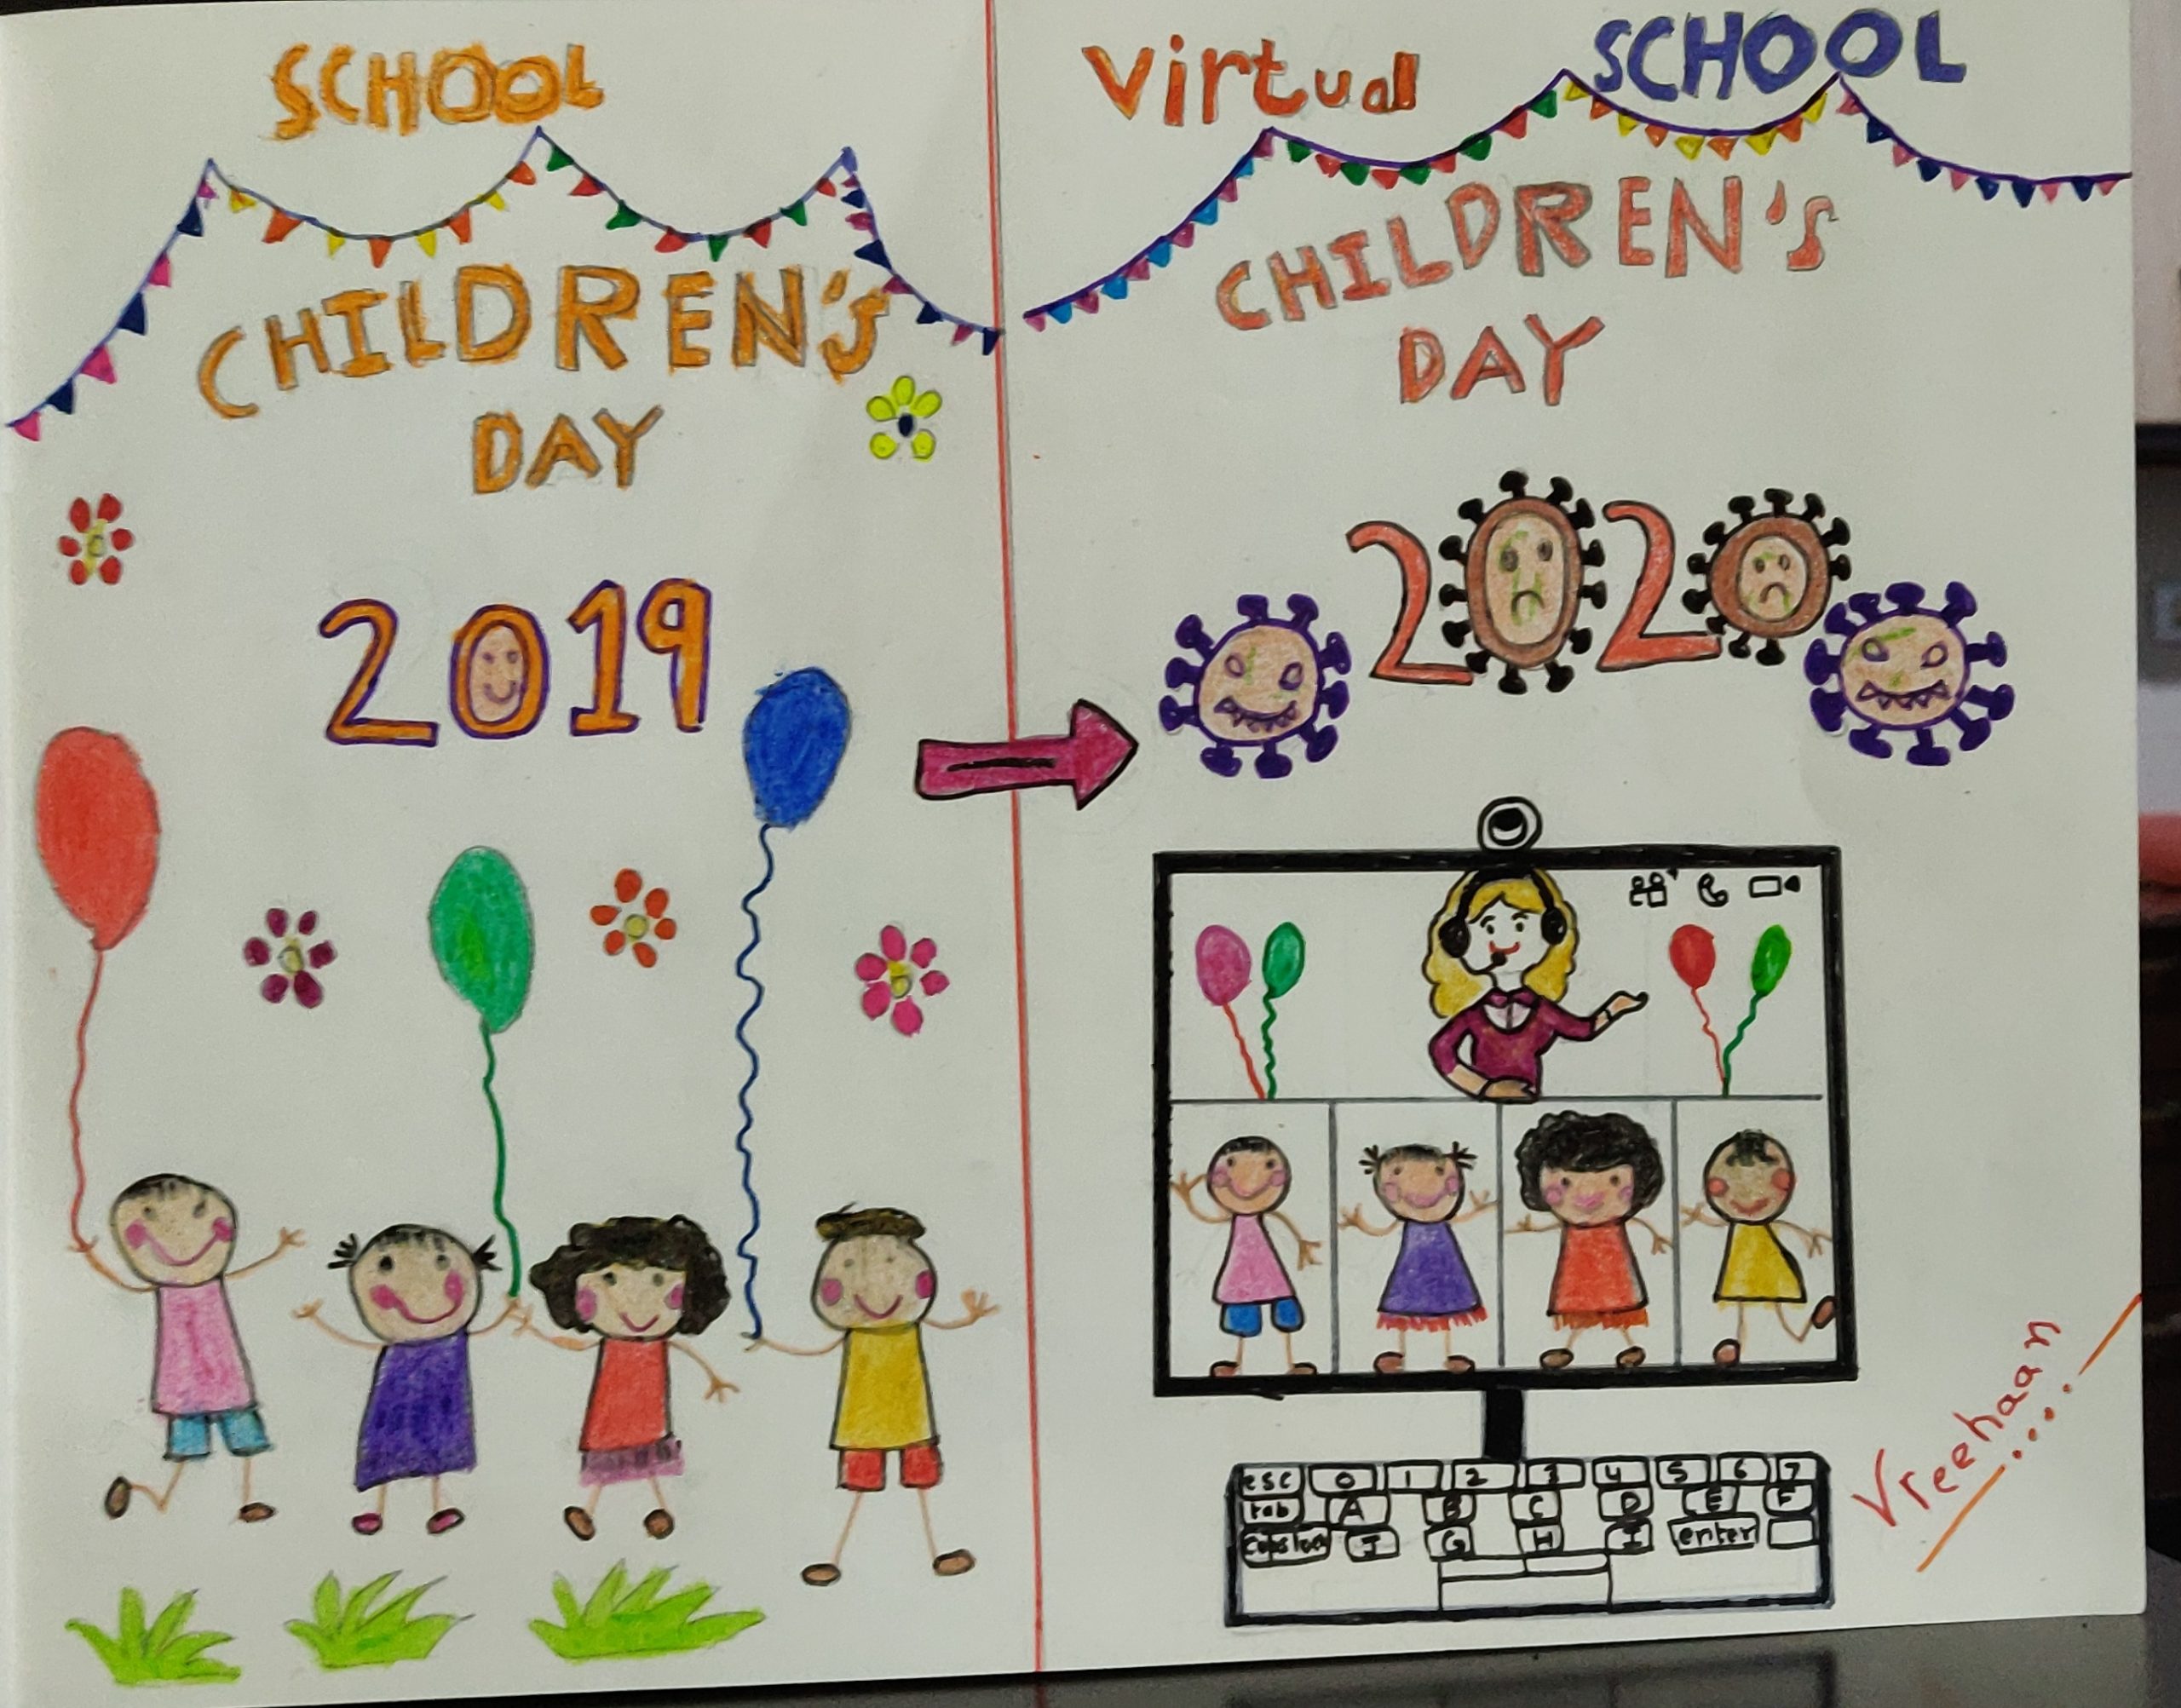 HOW TO MAKE HAPPY CHILDREN'S DAY CARD/CHILDREN'S DAY POSTER DRAWING/EASY CHILDREN'S  DAY DRAWING IDEA